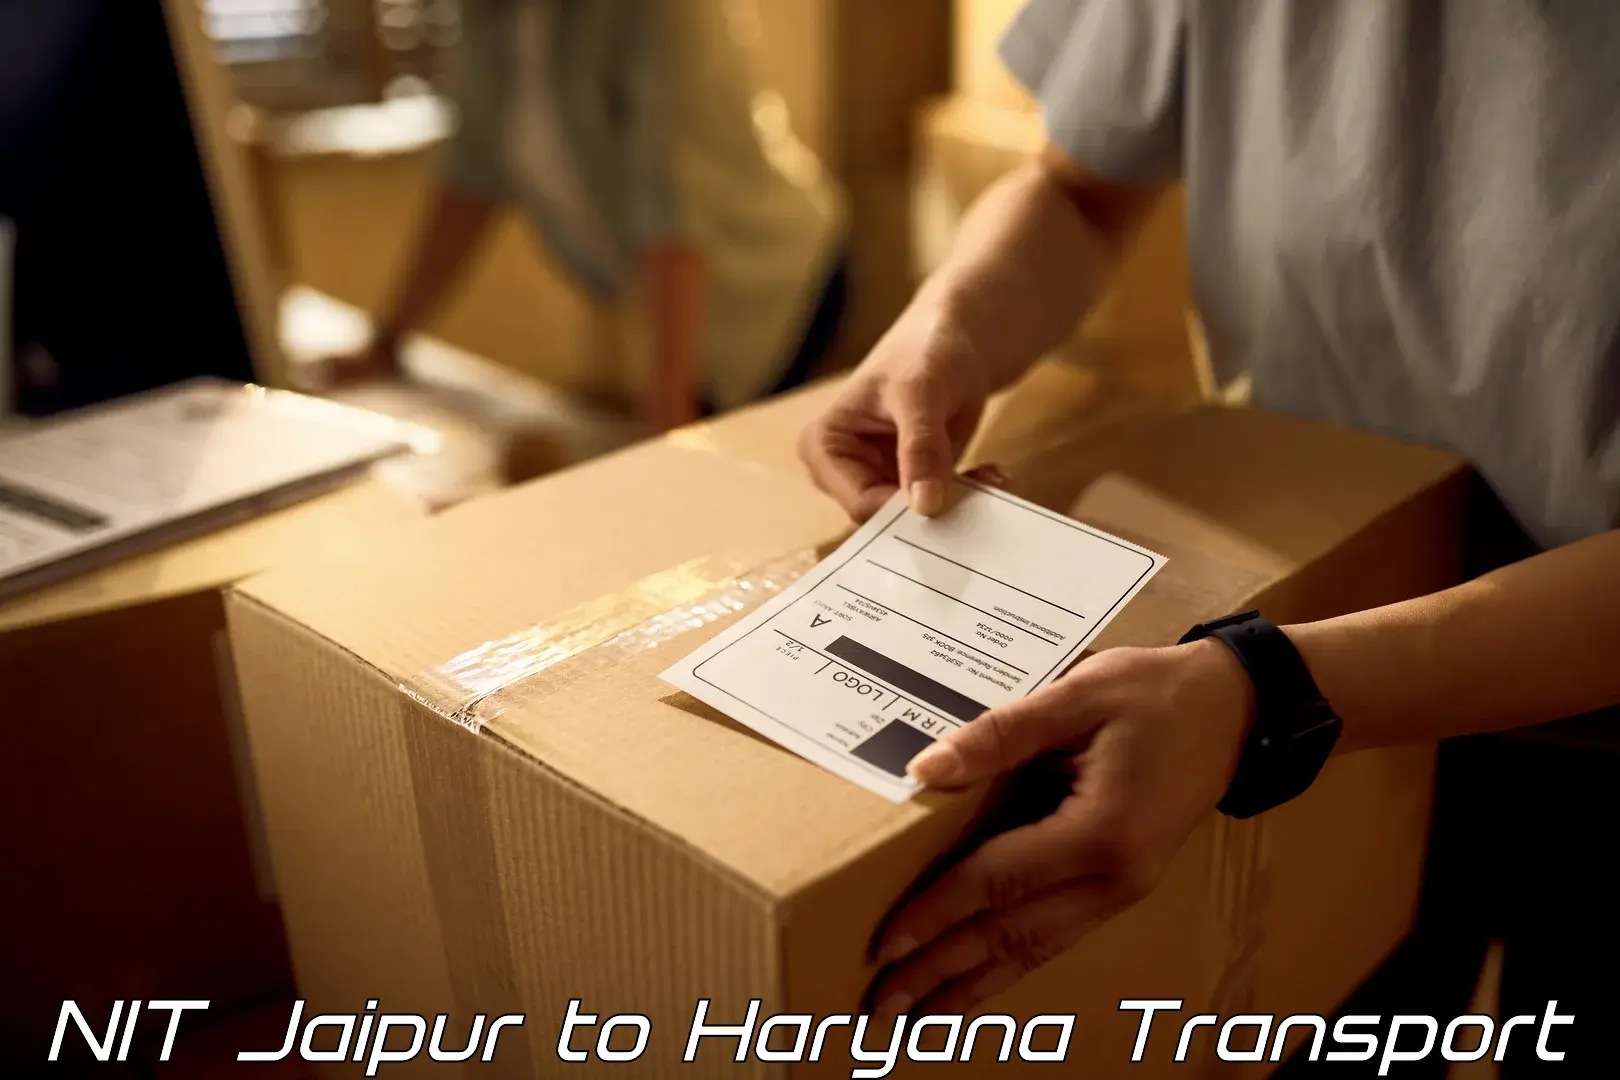 Furniture transport service NIT Jaipur to Odhan